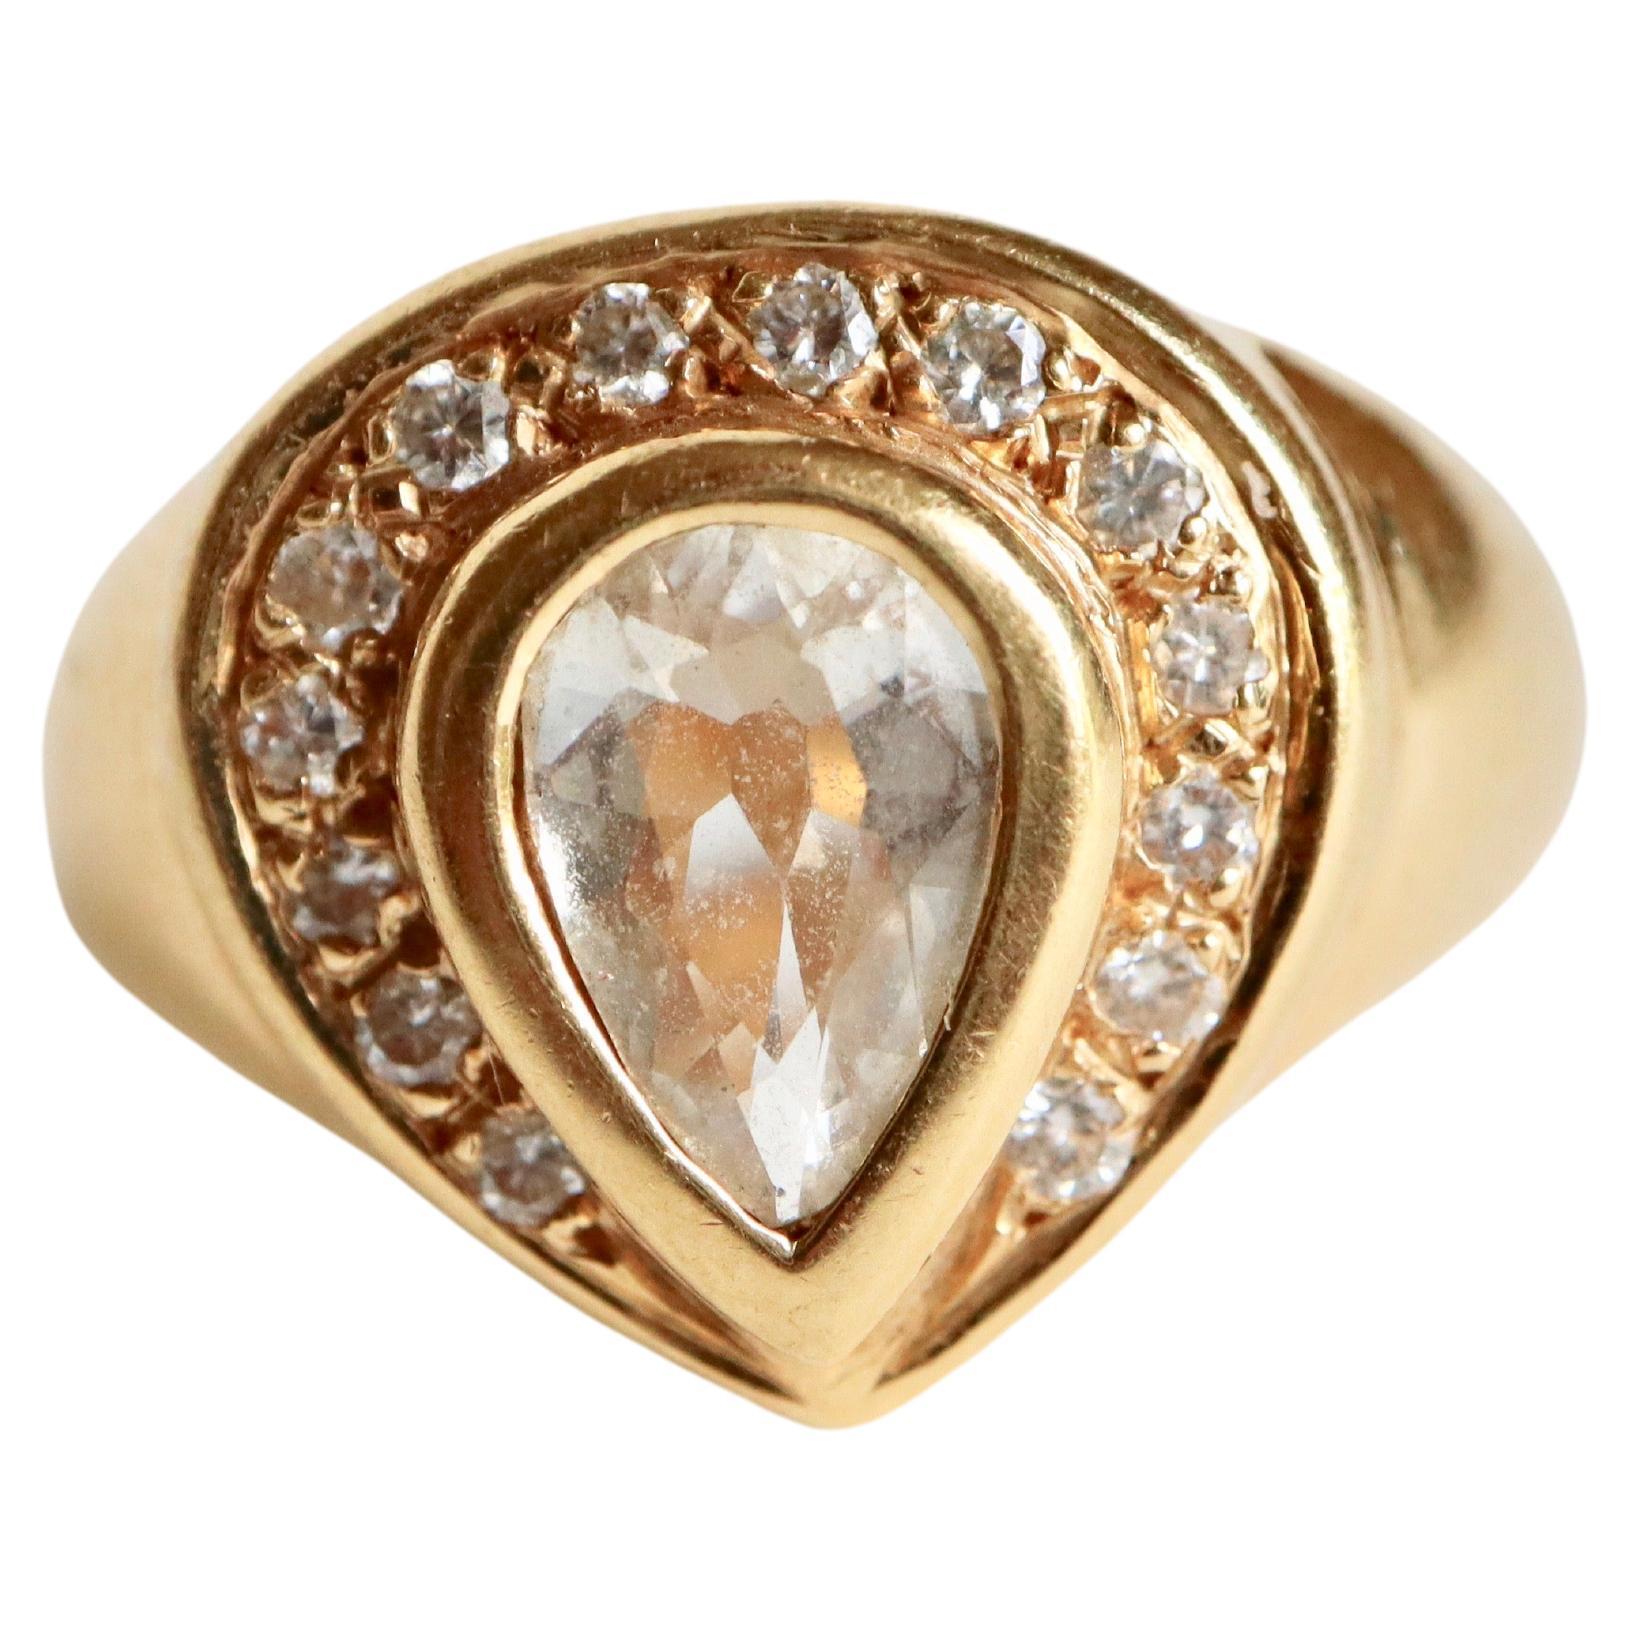 Birne Diamant 18kt Gelbgold Armreif Ring
Armreif mit einem zentralen birnenförmigen Diamanten in Lünettenfassung, 8 x 6 mm groß, 1,5 mm tief, mit einem Gewicht von 0,75 bis 1 Karat. Umgeben von 14 kleinen Diamanten. 
Diamant Birne : Schätzung: